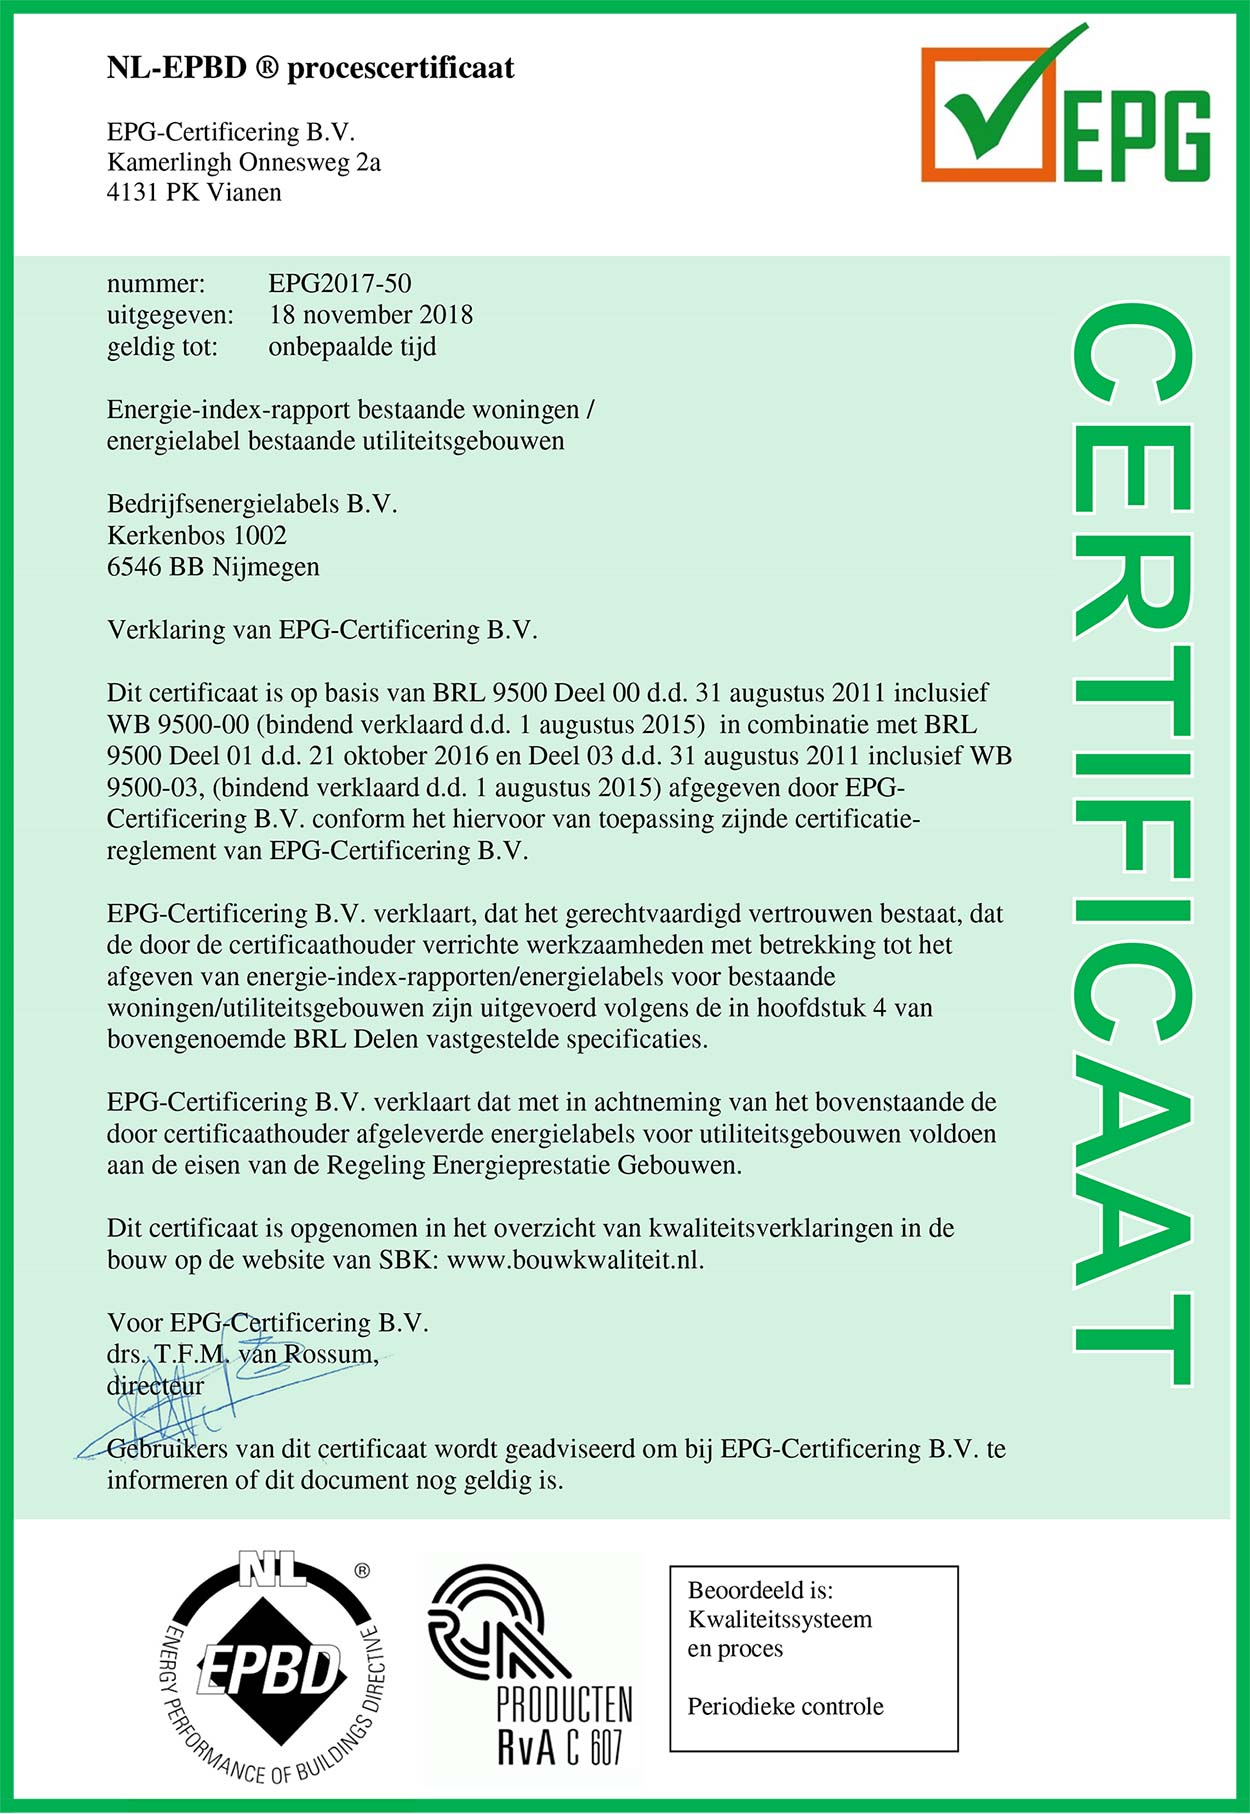 NL-EPBD ® procescertificaat EPG-Certificering B.V. Kamerlingh Onnesweg 2a 4131 PK Vianen nummer:          EPG2017-50 uitgegeven:    18 november 2018 geldig tot:       onbepaalde tijd Energielabel bestaande utiliteitsgebouwen Bedrijfsenergielabels B.V. Kerkenbos 1002 6546 BB Nijmegen Verklaring van EPG-Certificering B.V. Dit certificaat is op basis van BRL 9500 Deel 00 d.d. 31 augustus 2011 inclusief WB 9500-00 (bindend verklaard d.d. 1 augustus 2015)  in combinatie met BRL 9500 Deel 01 en d.d. 21 oktober 2016 en Deel 03 d.d. 31 augustus 2011 inclusief WB 9500-03, (bindend verklaard d.d. 1 augustus 2015) afgegeven door EPG-Certificering B.V. conform het hiervoor van toepassing zijnde certificatie-reglement van EPG-Certificering B.V. EPG-Certificering B.V. verklaart, dat het gerechtvaardigd vertrouwen bestaat, dat de door de certificaathouder verrichte werkzaamheden met betrekking tot het afgeven van energielabels voor bestaande utiliteitsgebouwen zijn uitgevoerd volgens de in hoofdstuk 4 van bovengenoemde BRL Delen vastgestelde specificaties. EPG-Certificering B.V. verklaart dat met in achtneming van het bovenstaande de door certificaathouder afgeleverde energielabels voor utiliteitsgebouwen voldoen aan de eisen van de Regeling Energieprestatie Gebouwen. Dit certificaat is opgenomen in het overzicht van kwaliteitsverklaringen in de bouw op de website van SBK: www.bouwkwaliteit.nl. Voor EPG-Certificering B.V. drs. T.F.M. van Rossum, directeur Gebruikers van dit certificaat wordt geadviseerd om bij EPG-Certificering B.V. te informeren of dit document nog geldig is. 